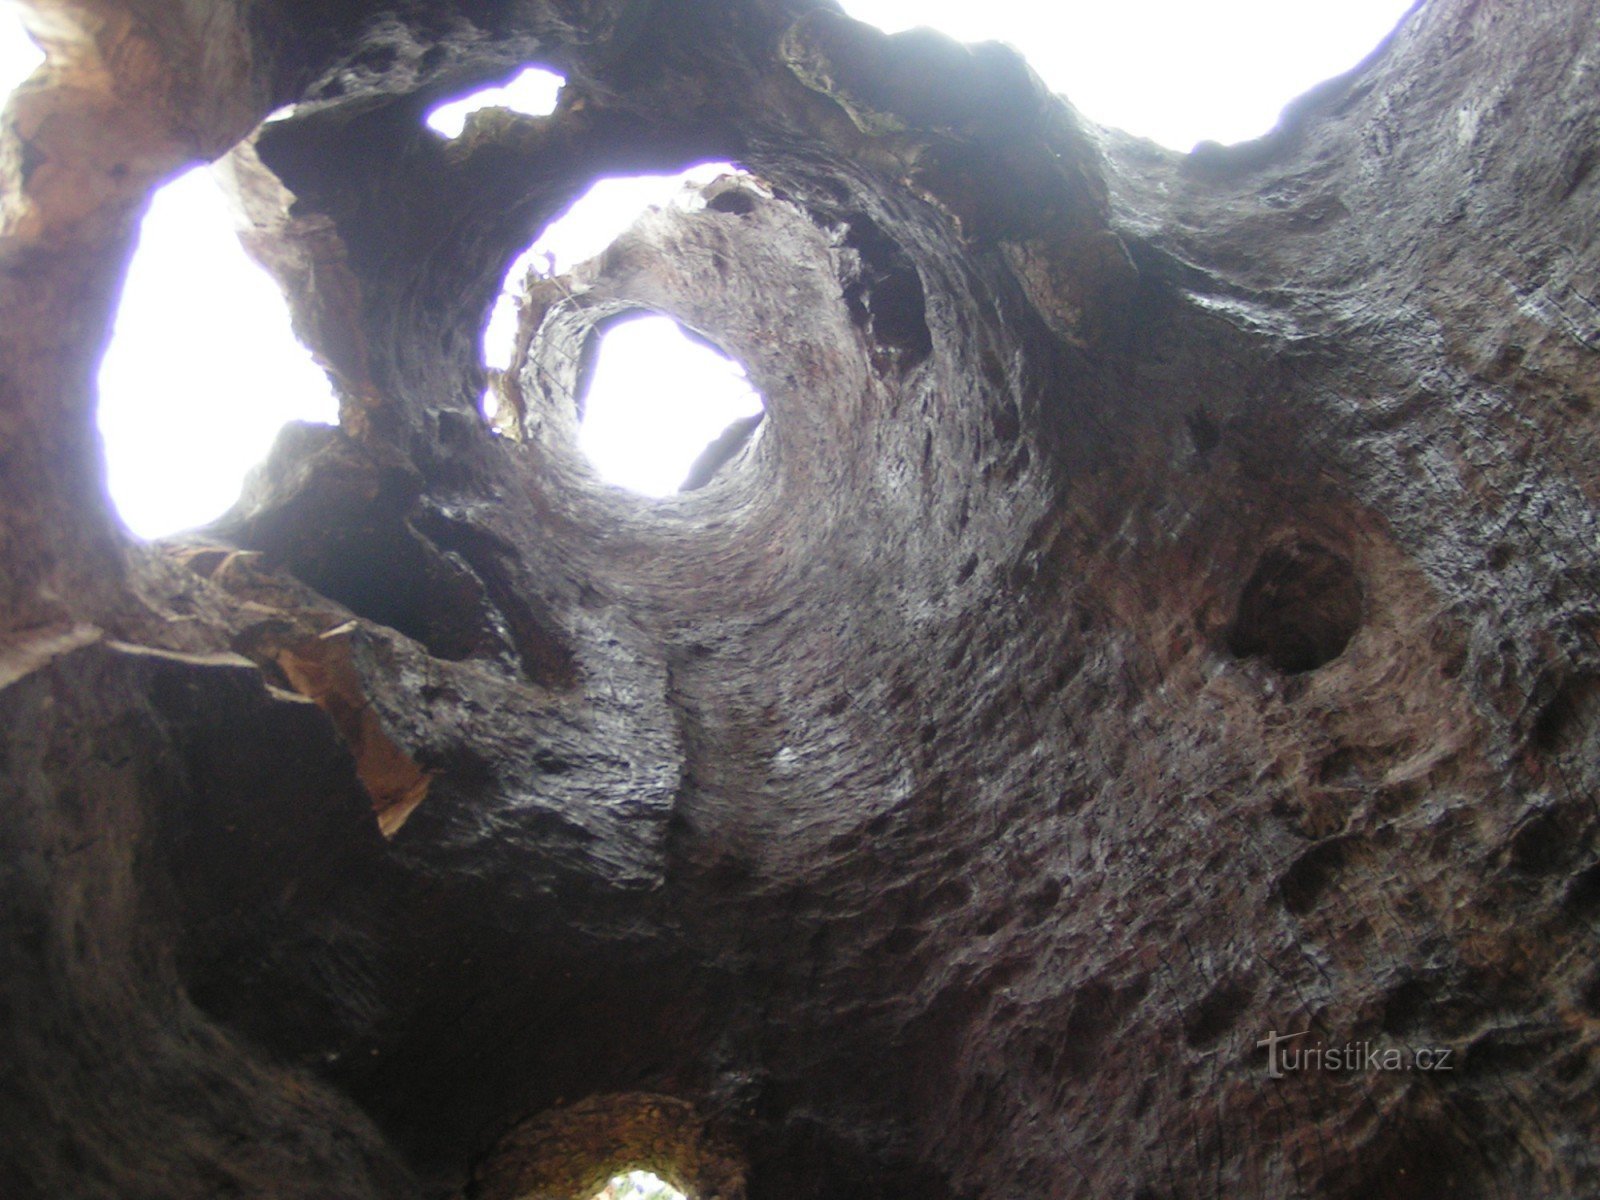 Pogled skozi votlo deblo javorja